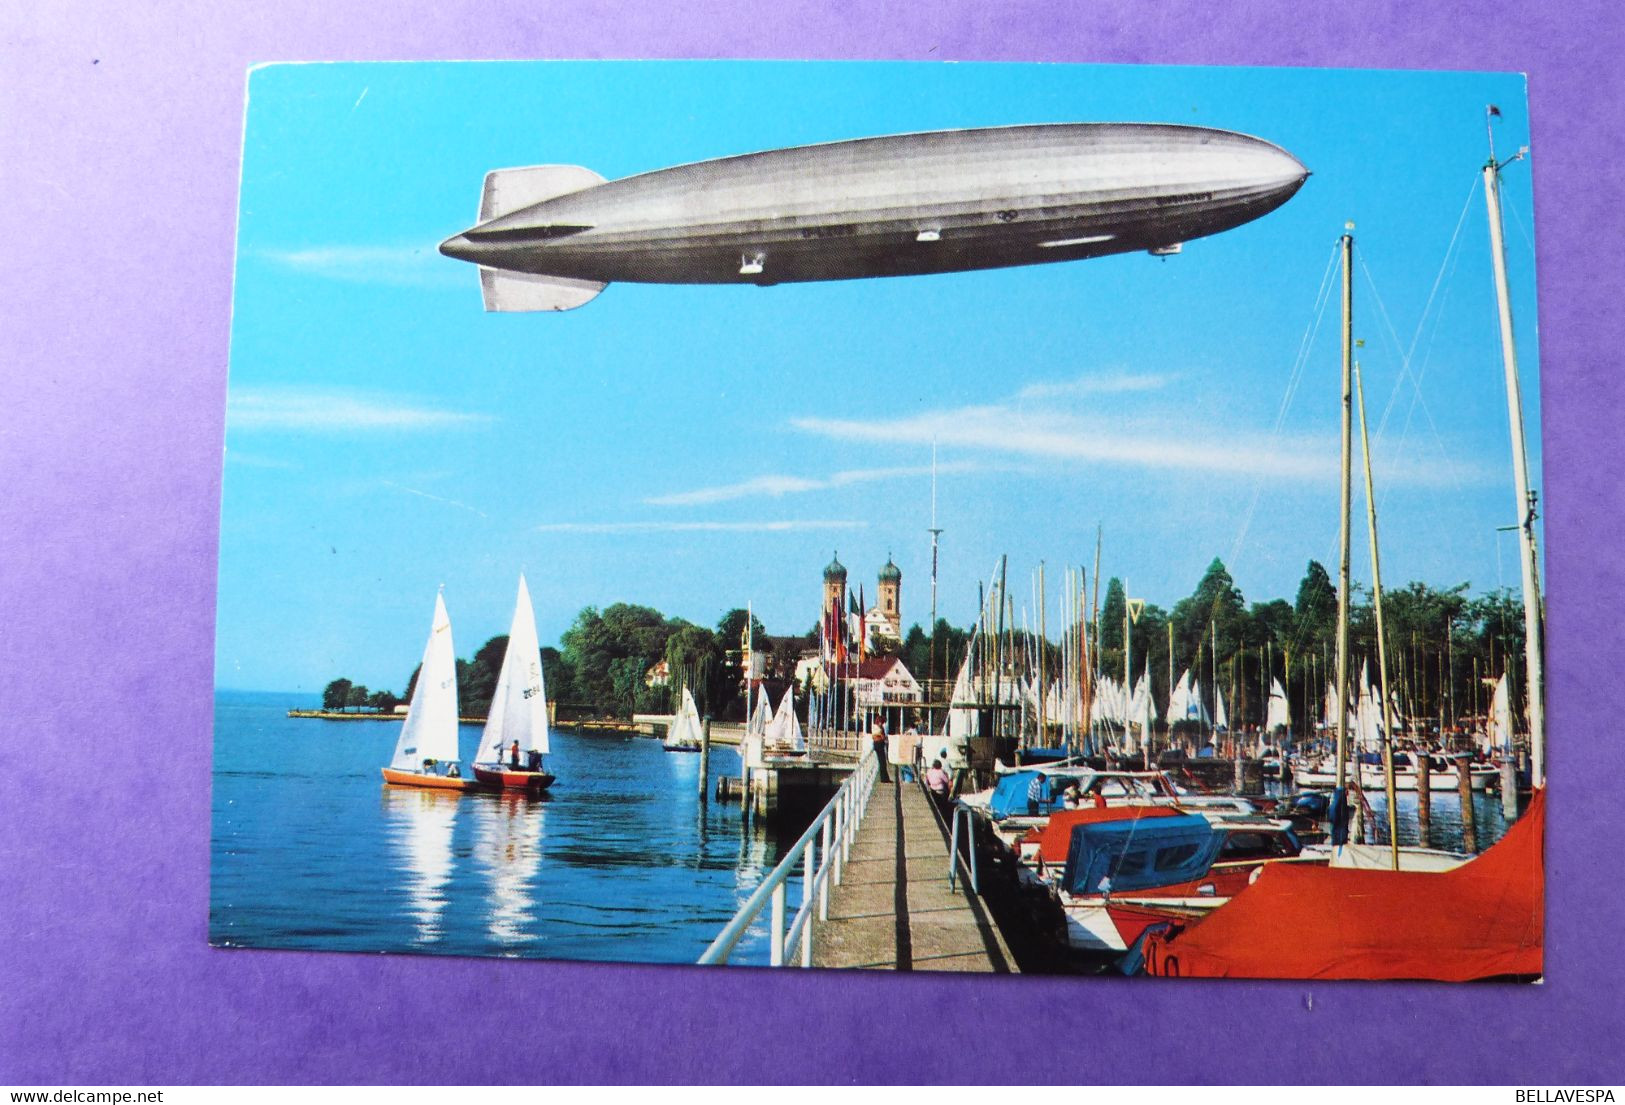 Zeppelin Friedrichshafen Luftschiff  Hindenburg Lot x 17 cpsm & 10 x thema stamps